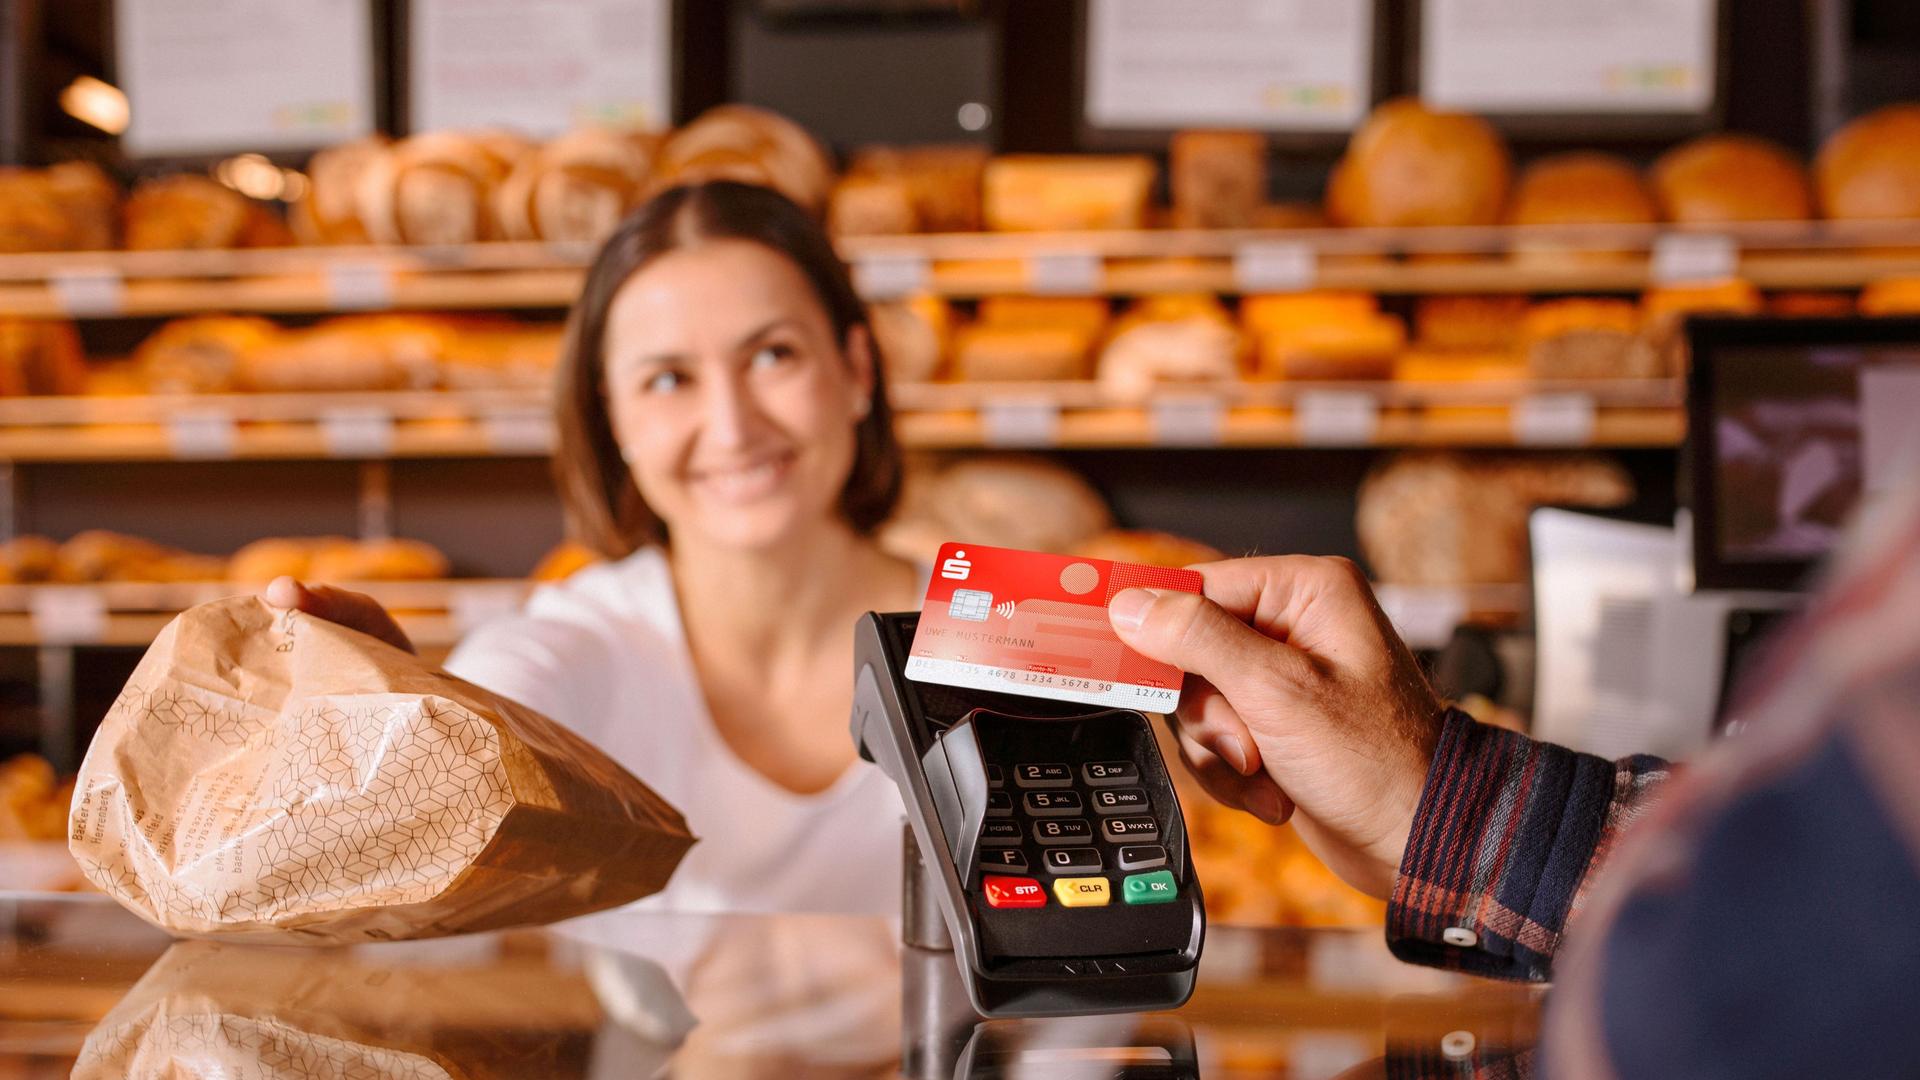 Person zahlt mit Sparkassen-Bankkarte in einer Bäckerei. Die Fachverkäuferin lächelt und reicht eine Papiertüte über den Tresen.